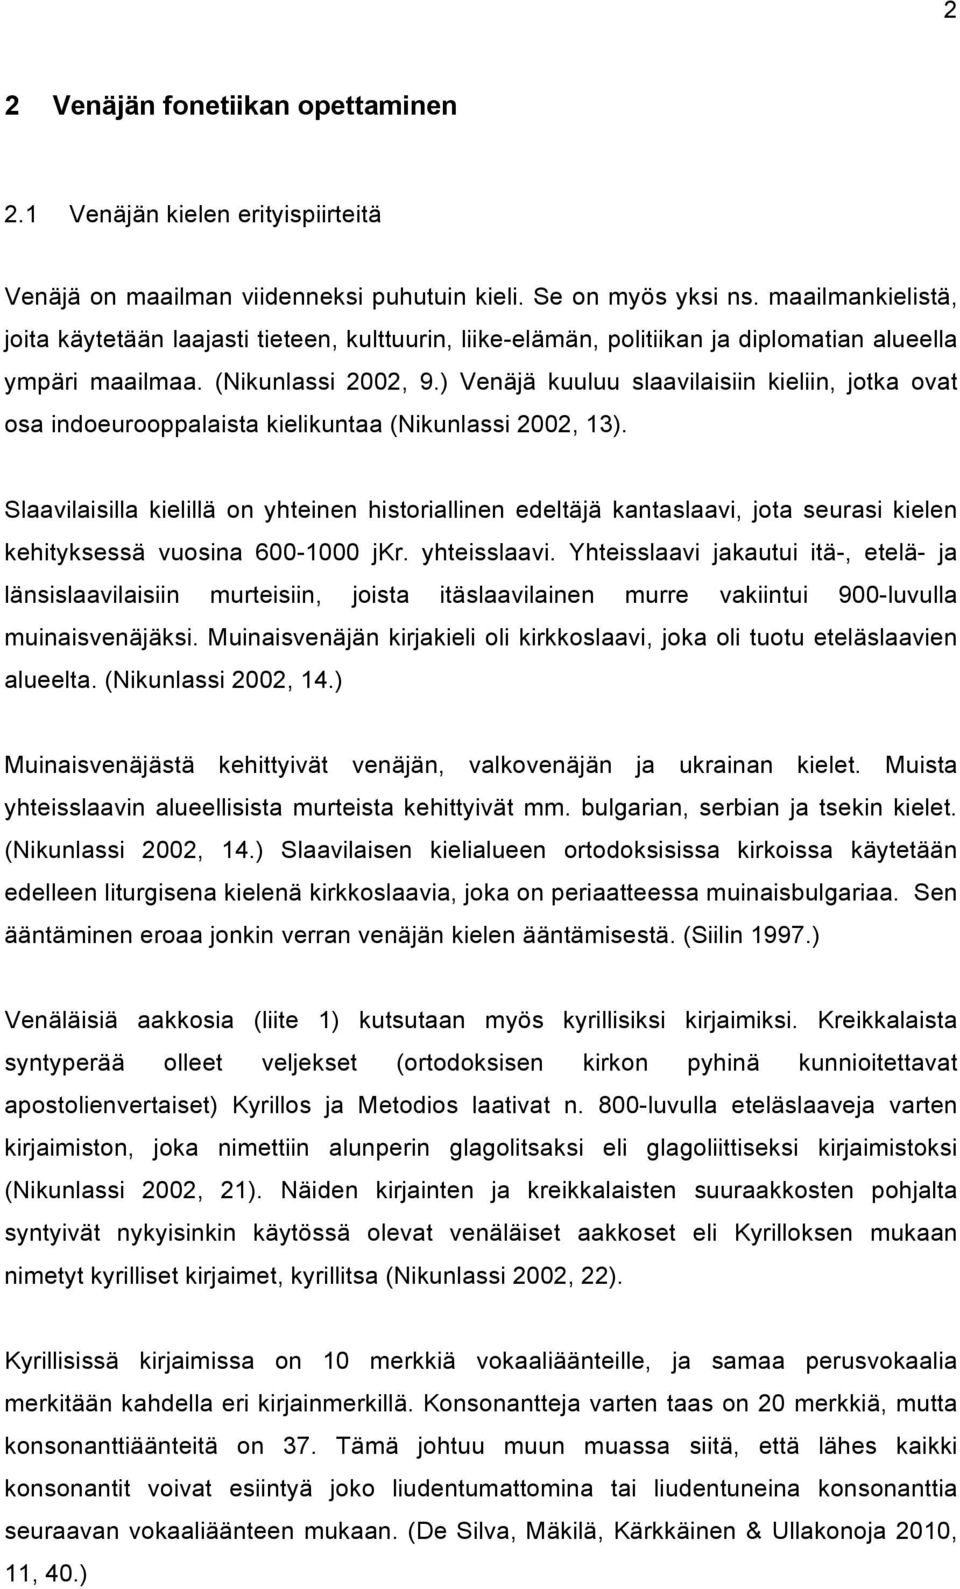 ) Venäjä kuuluu slaavilaisiin kieliin, jotka ovat osa indoeurooppalaista kielikuntaa (Nikunlassi 2002, 13).